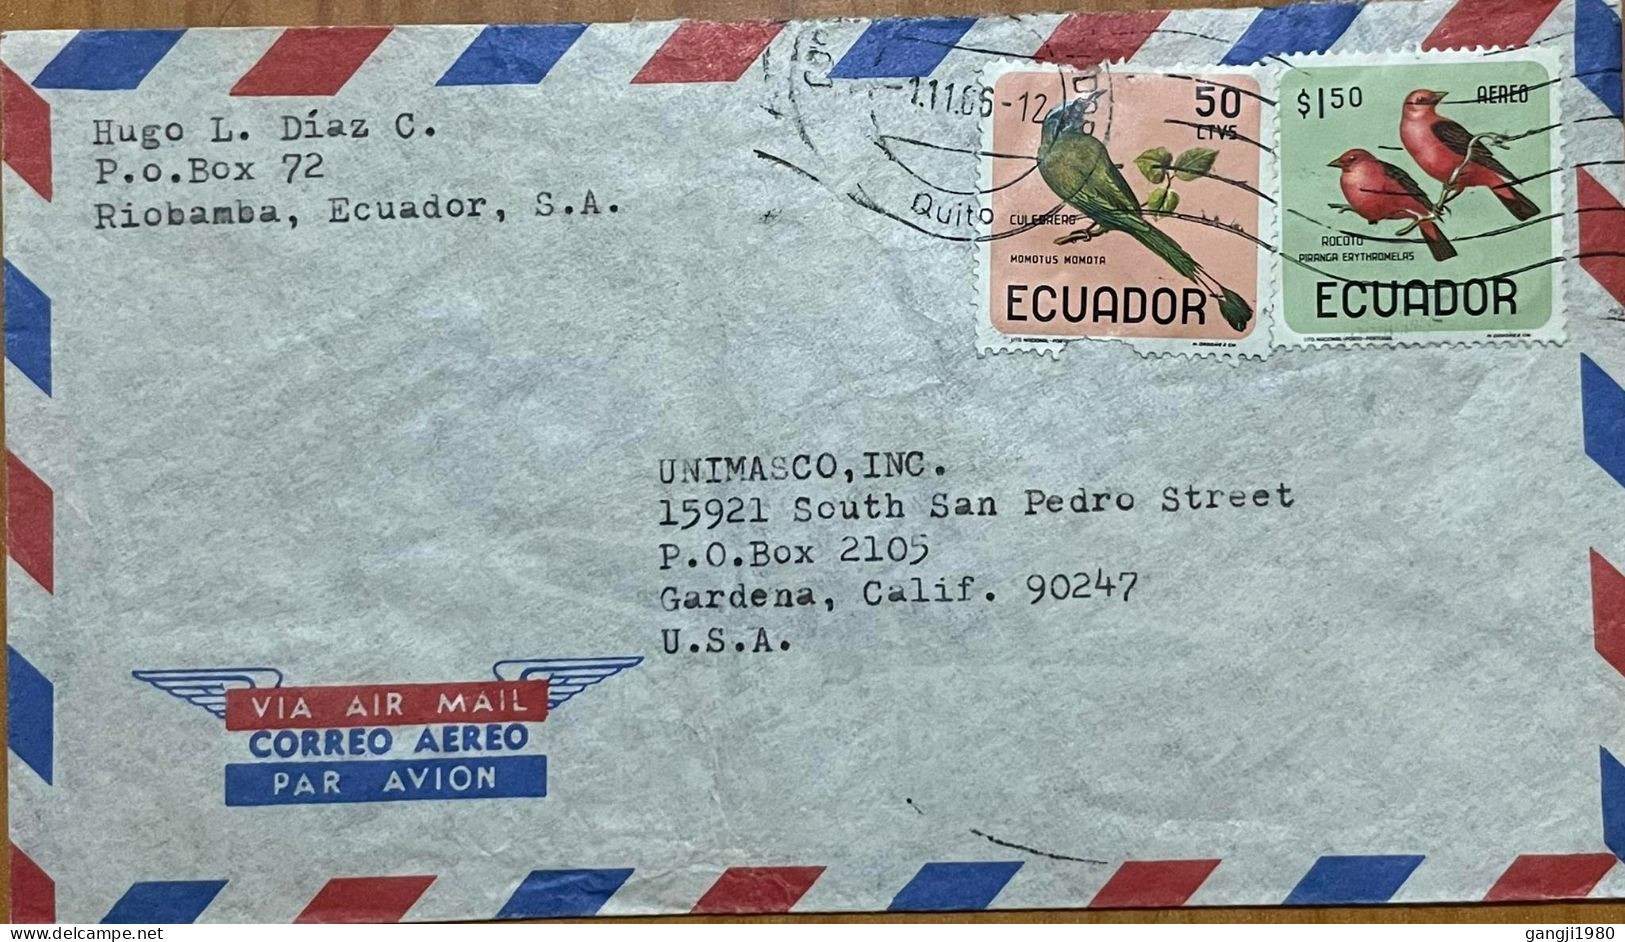 ECUADOR 1963, COVER USED TO USA, 2 DIFF BIRD STAMP MOT MOTE SCARLET TANAGER, QUITO CITY CANCEL - Ecuador